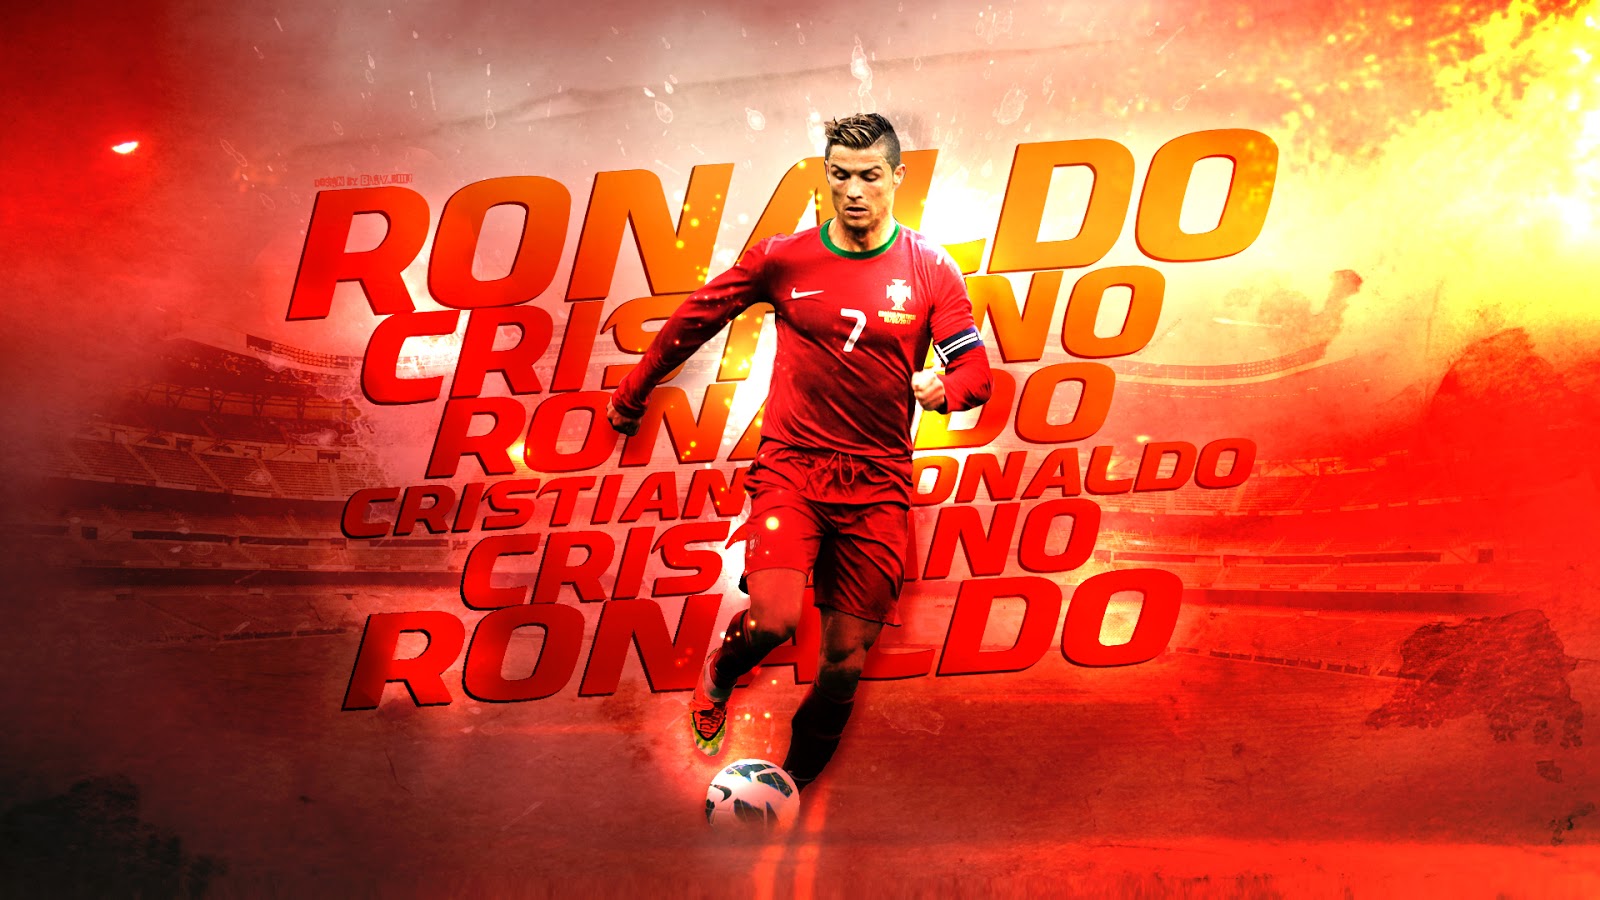 Cristiano Ronaldo New Wallpaper HD Portugal Terminator